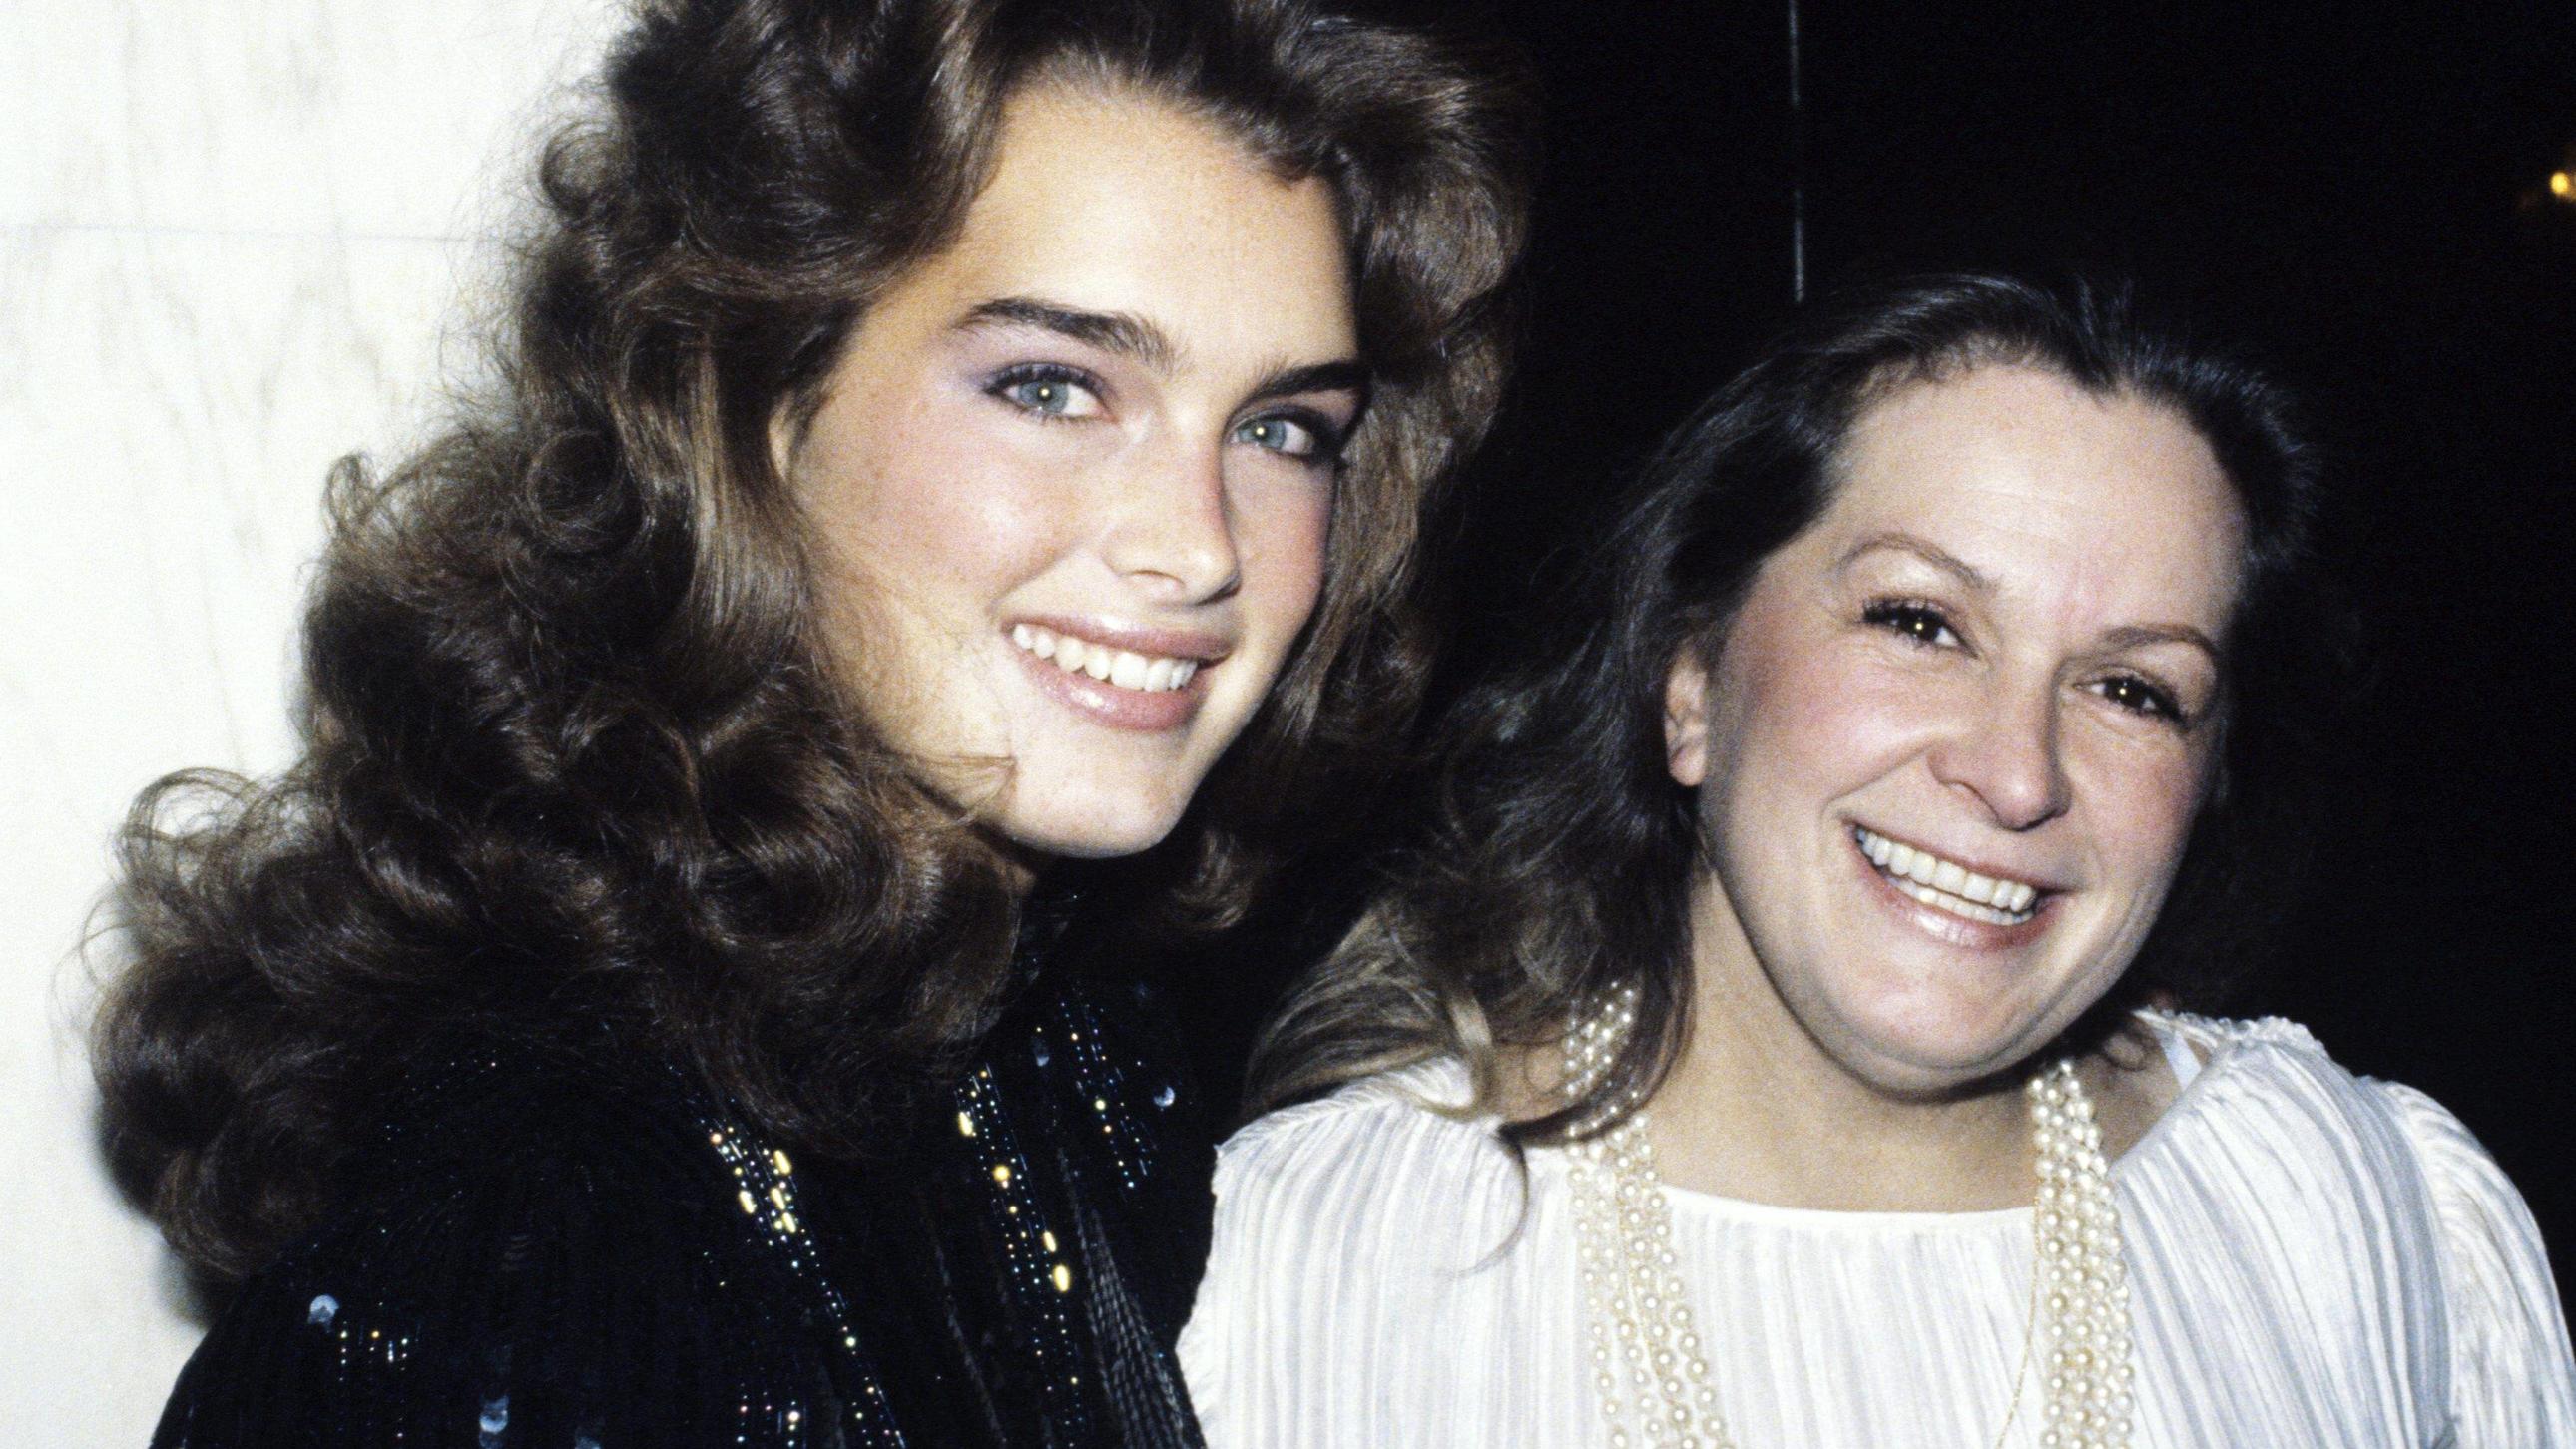 Brooke Shields Seite an Seite mit ihrer Mutter Teri in 1982.